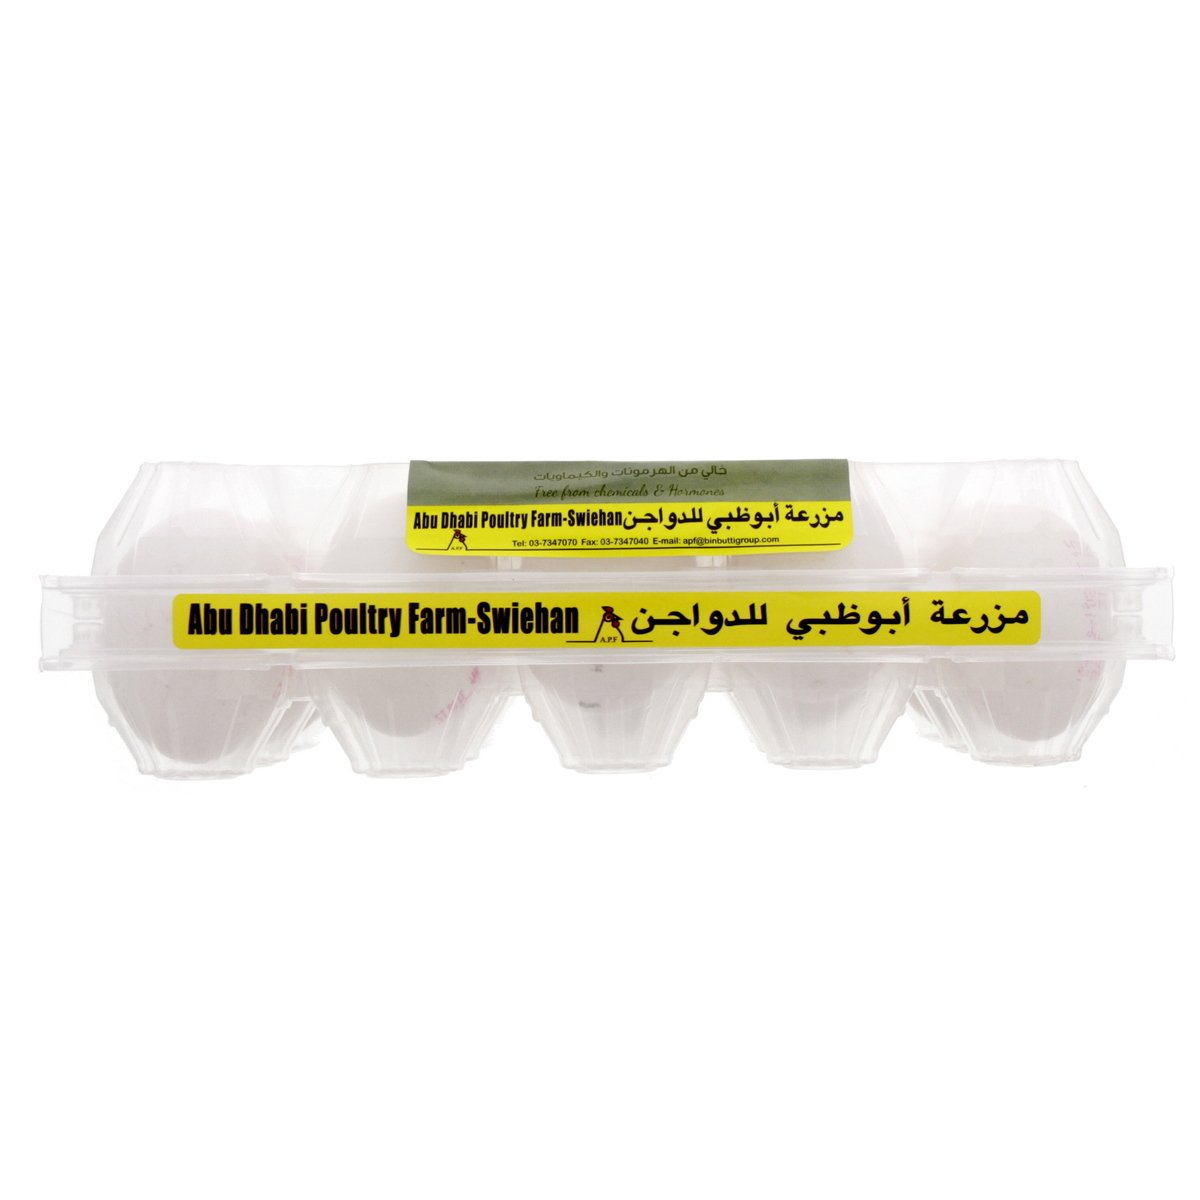 Abu Dhabi Poultry Farm Grade A White Eggs Large 15 pcs